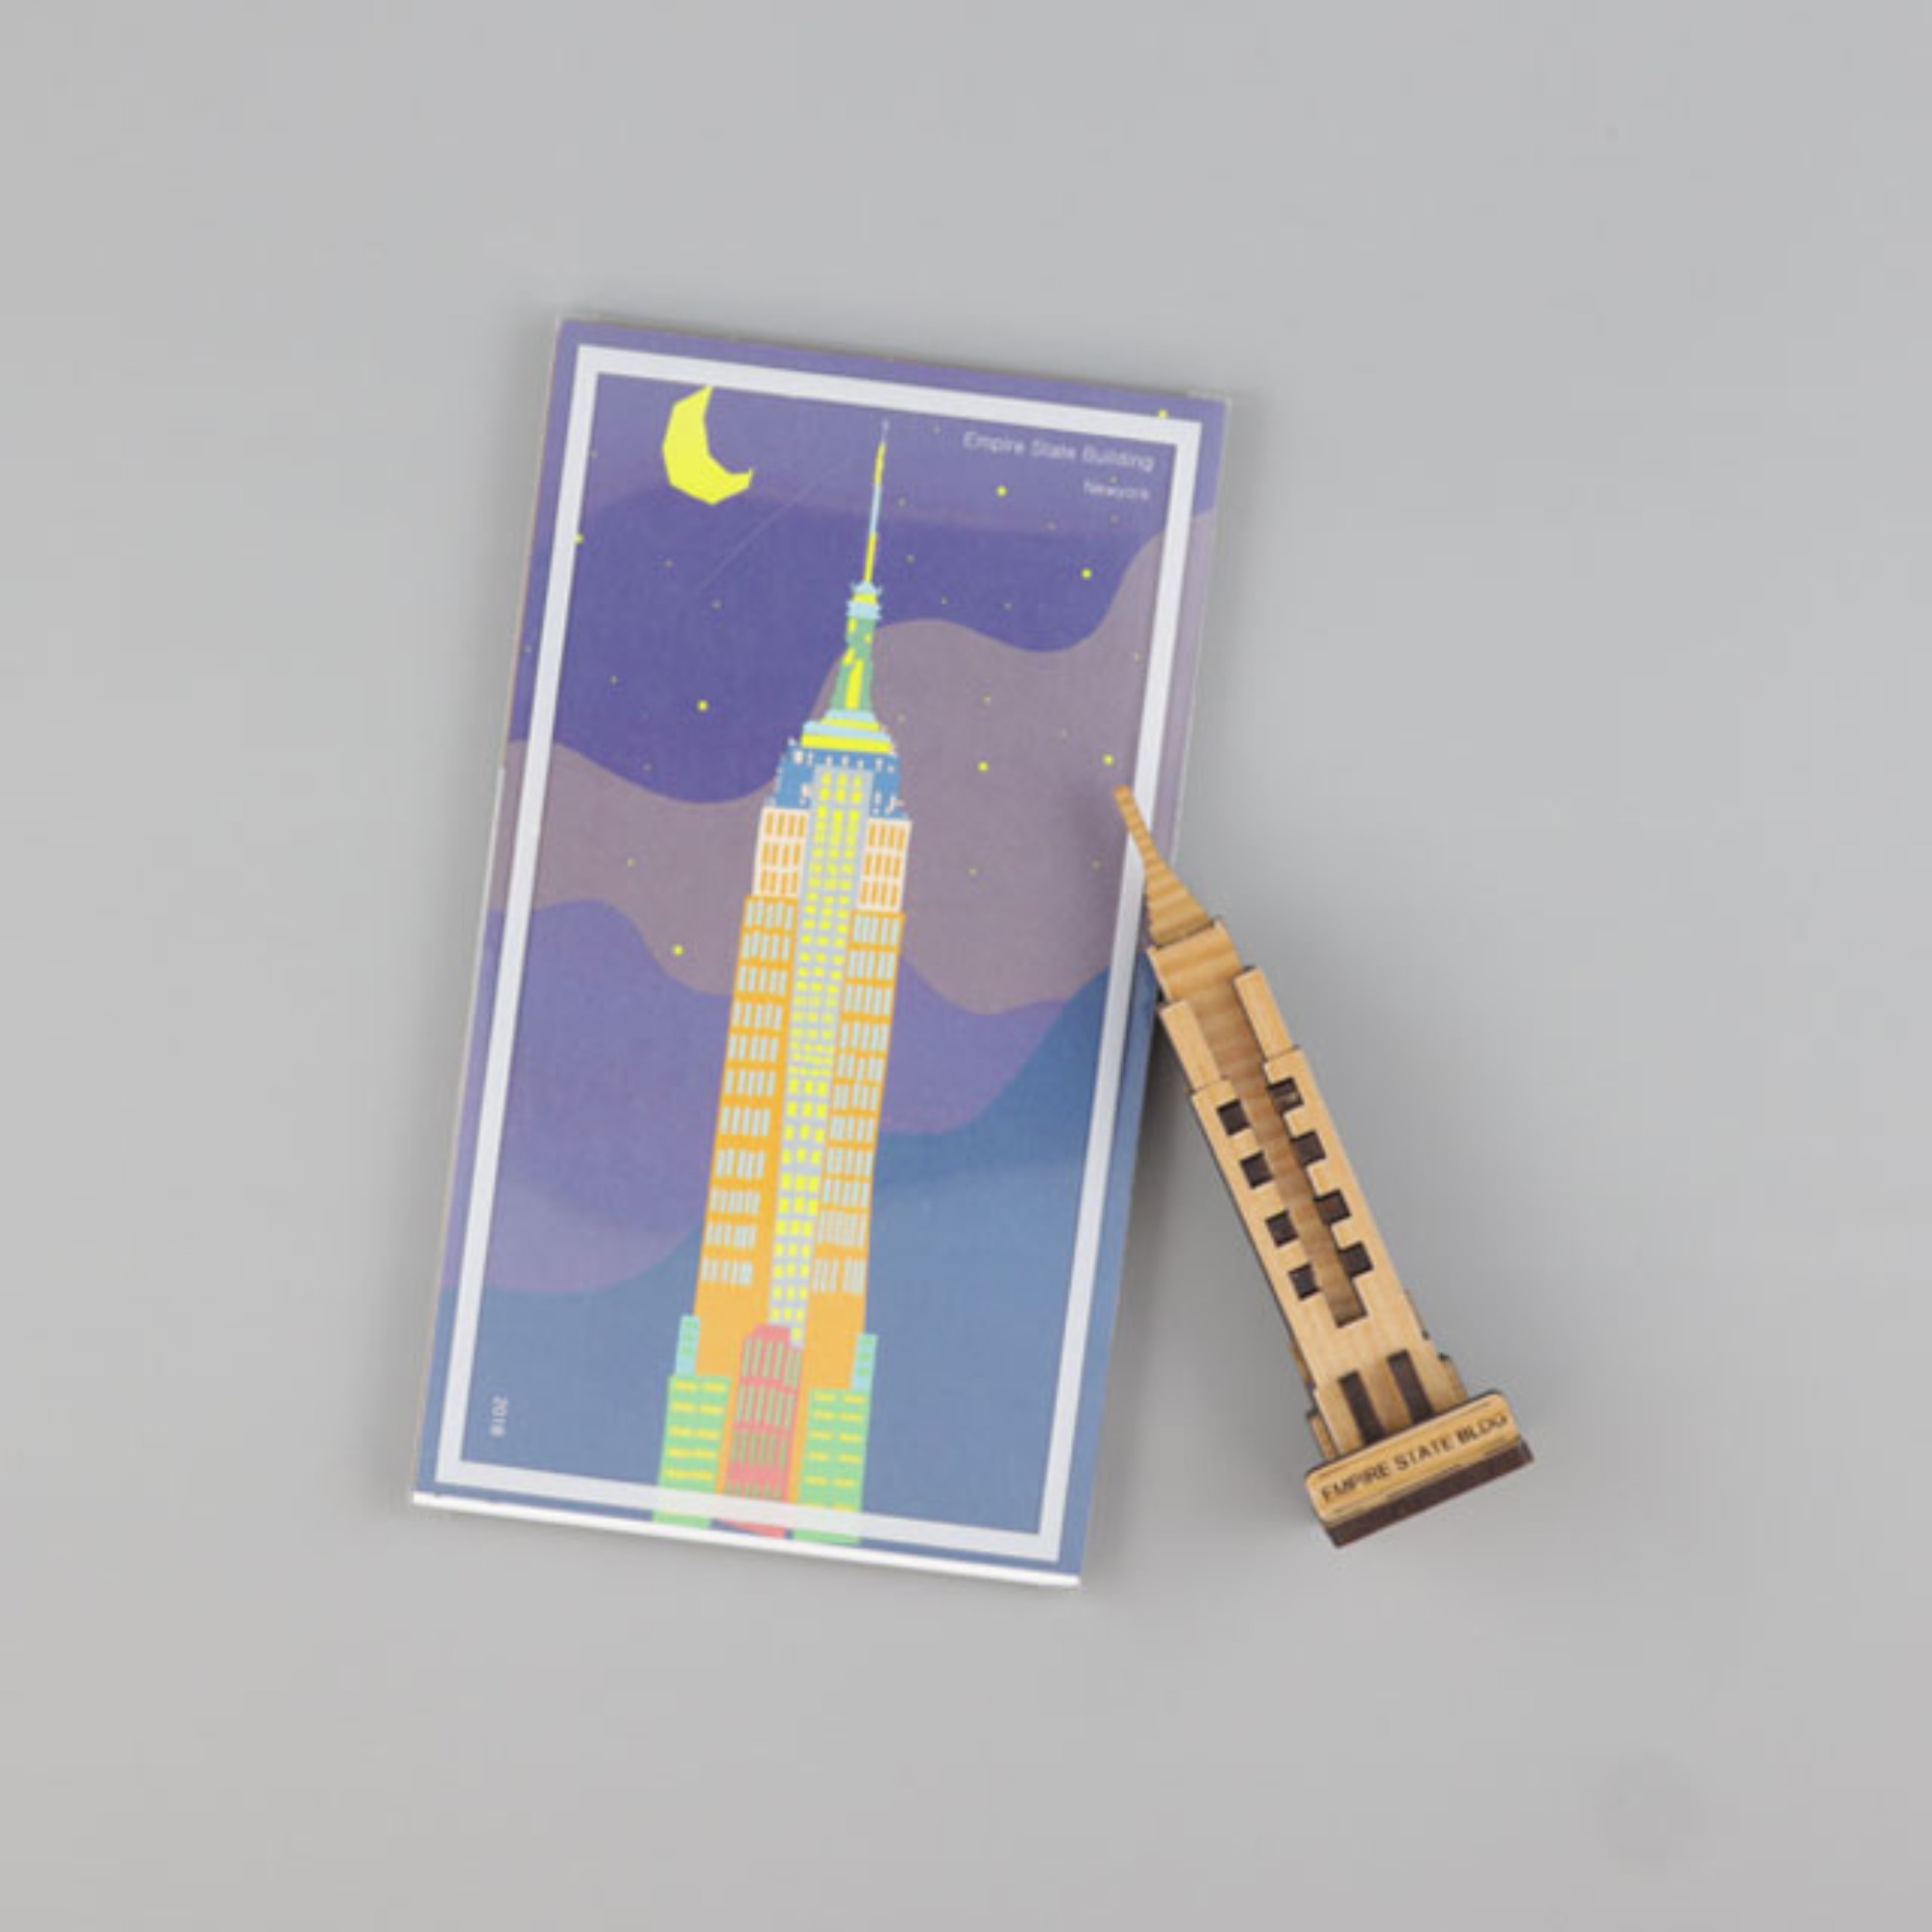 엠파이어빌딩 랜드마크 원목 입체퍼즐 포스트카드